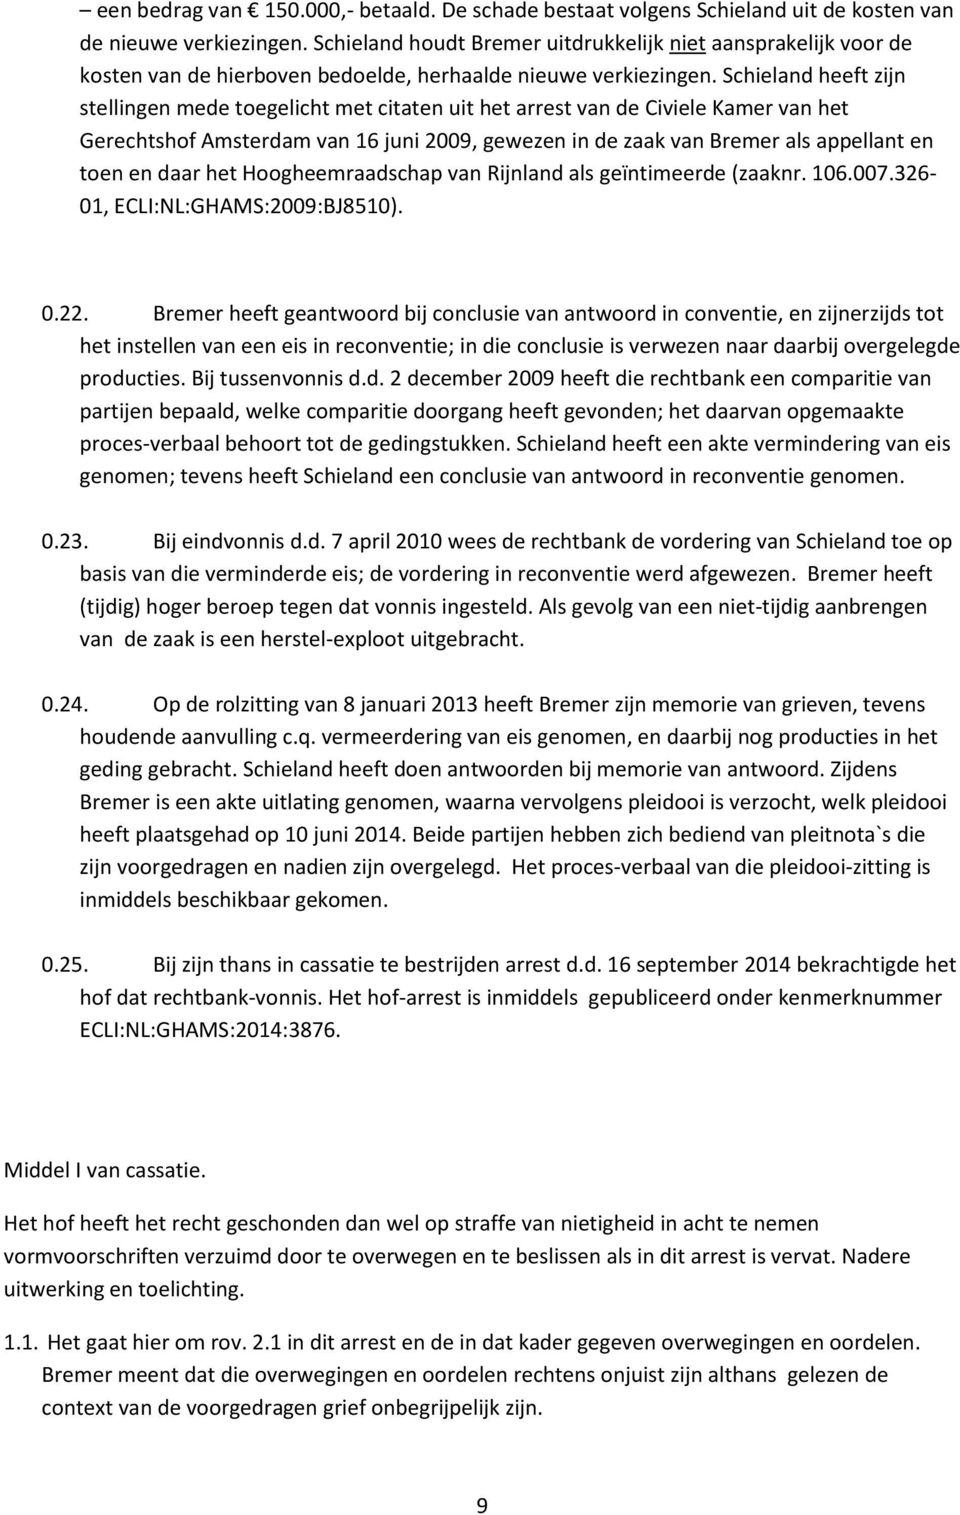 Schieland heeft zijn stellingen mede toegelicht met citaten uit het arrest van de Civiele Kamer van het Gerechtshof Amsterdam van 16 juni 2009, gewezen in de zaak van Bremer als appellant en toen en